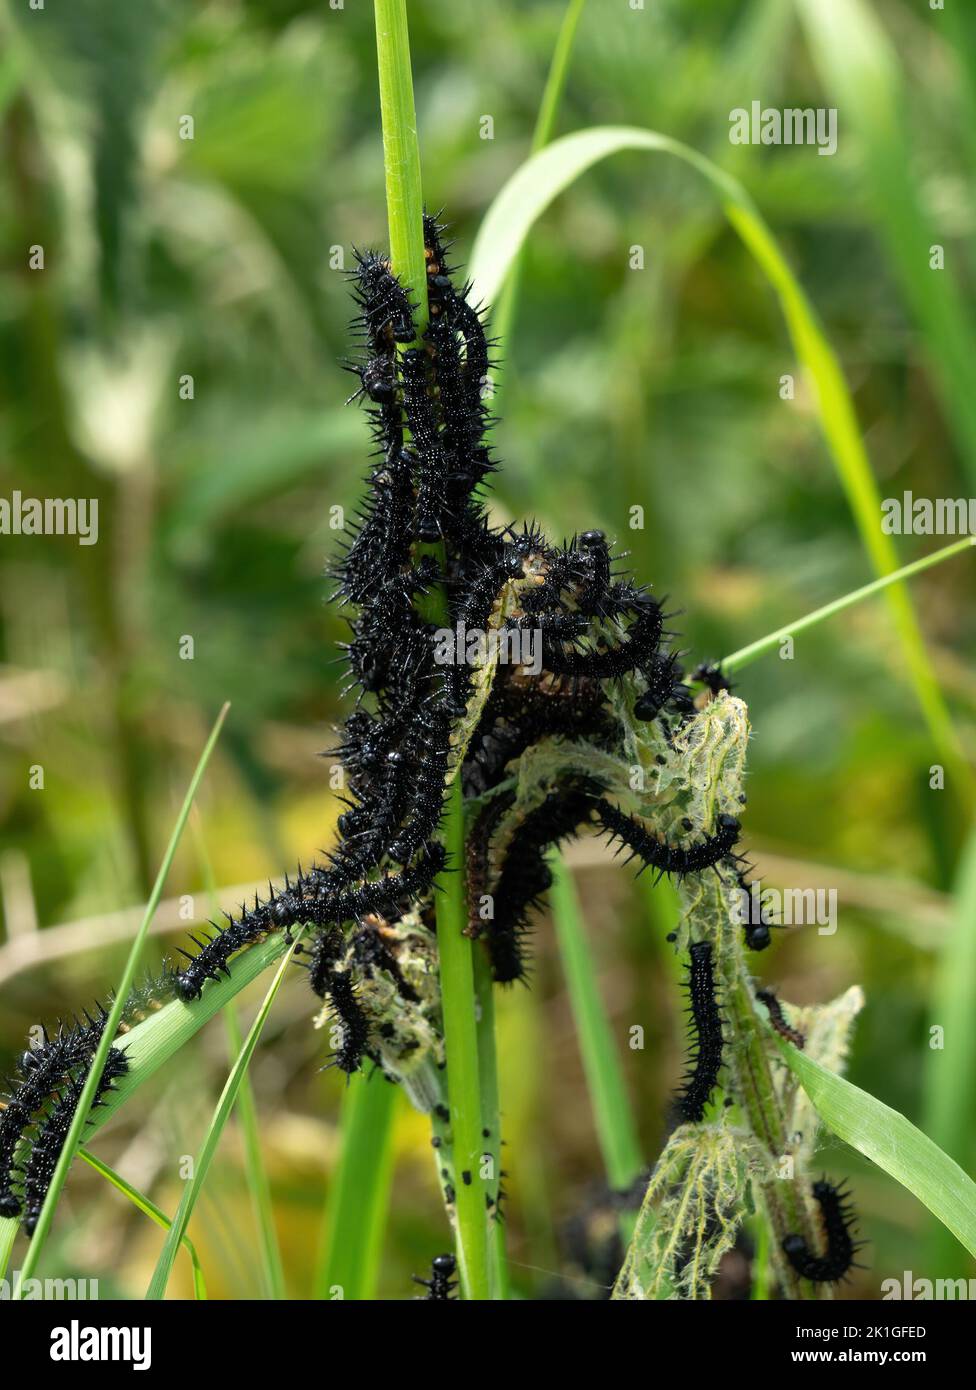 Un'infestazione di caterpilars neri e pelosi della farfalla di Peacock sui gambi dell'erba, Leicestershire, Inghilterra, Regno Unito Foto Stock